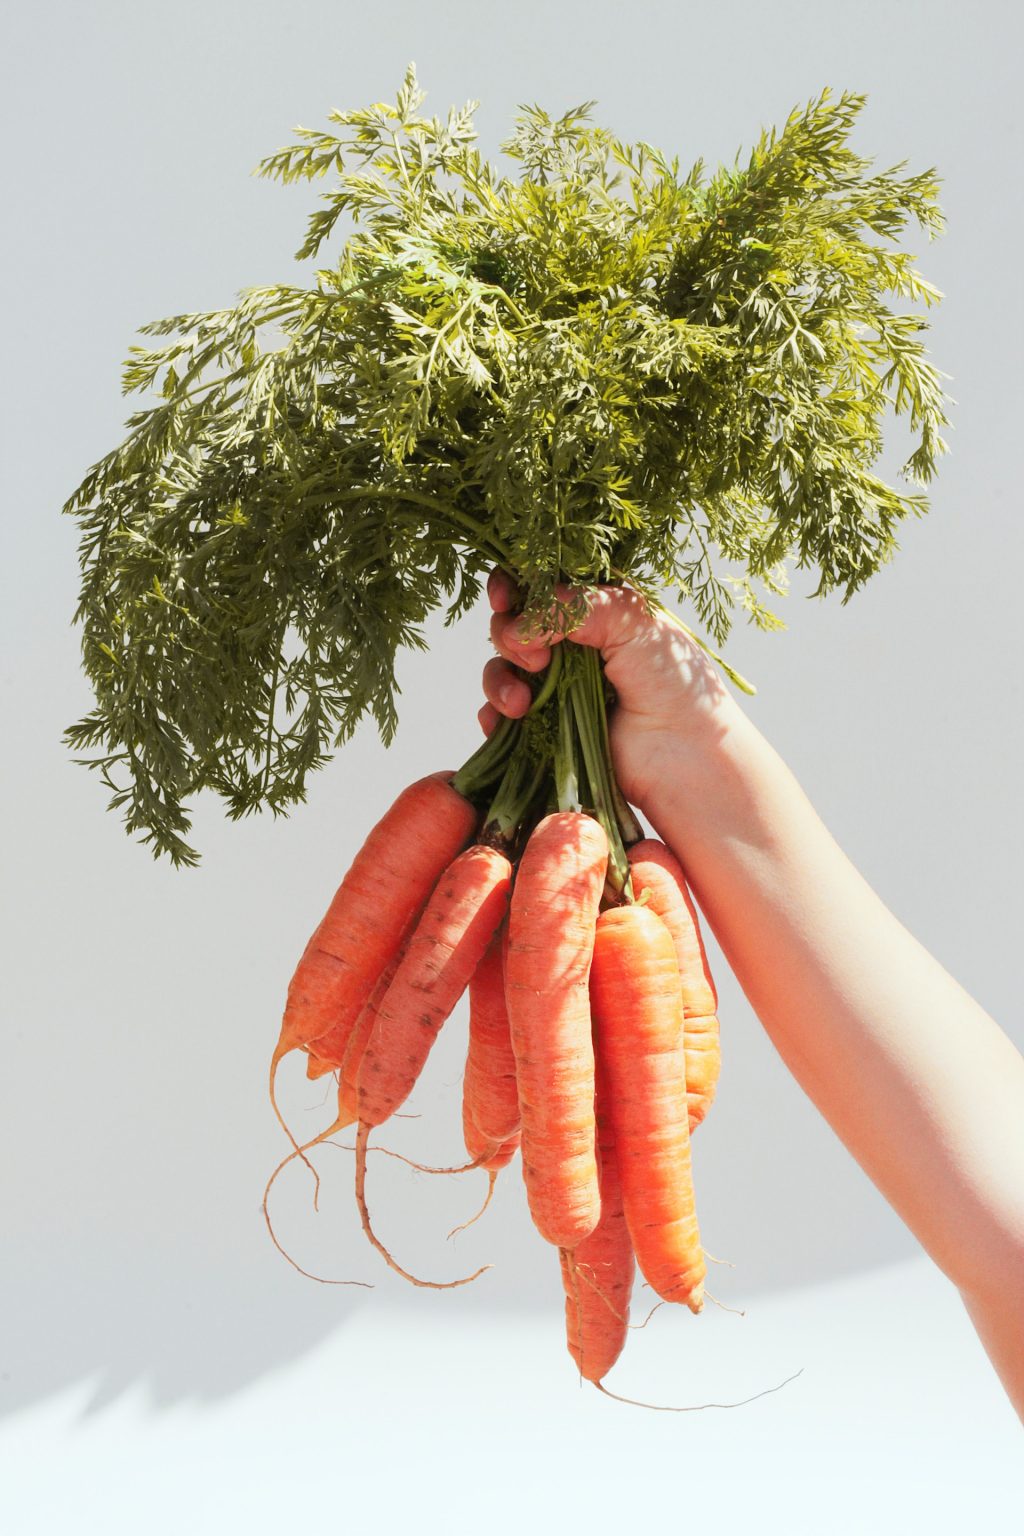 quả cà rốt là thực phẩm chứa nhiều dưỡng chất giúo da căng bóng và mịn màng.